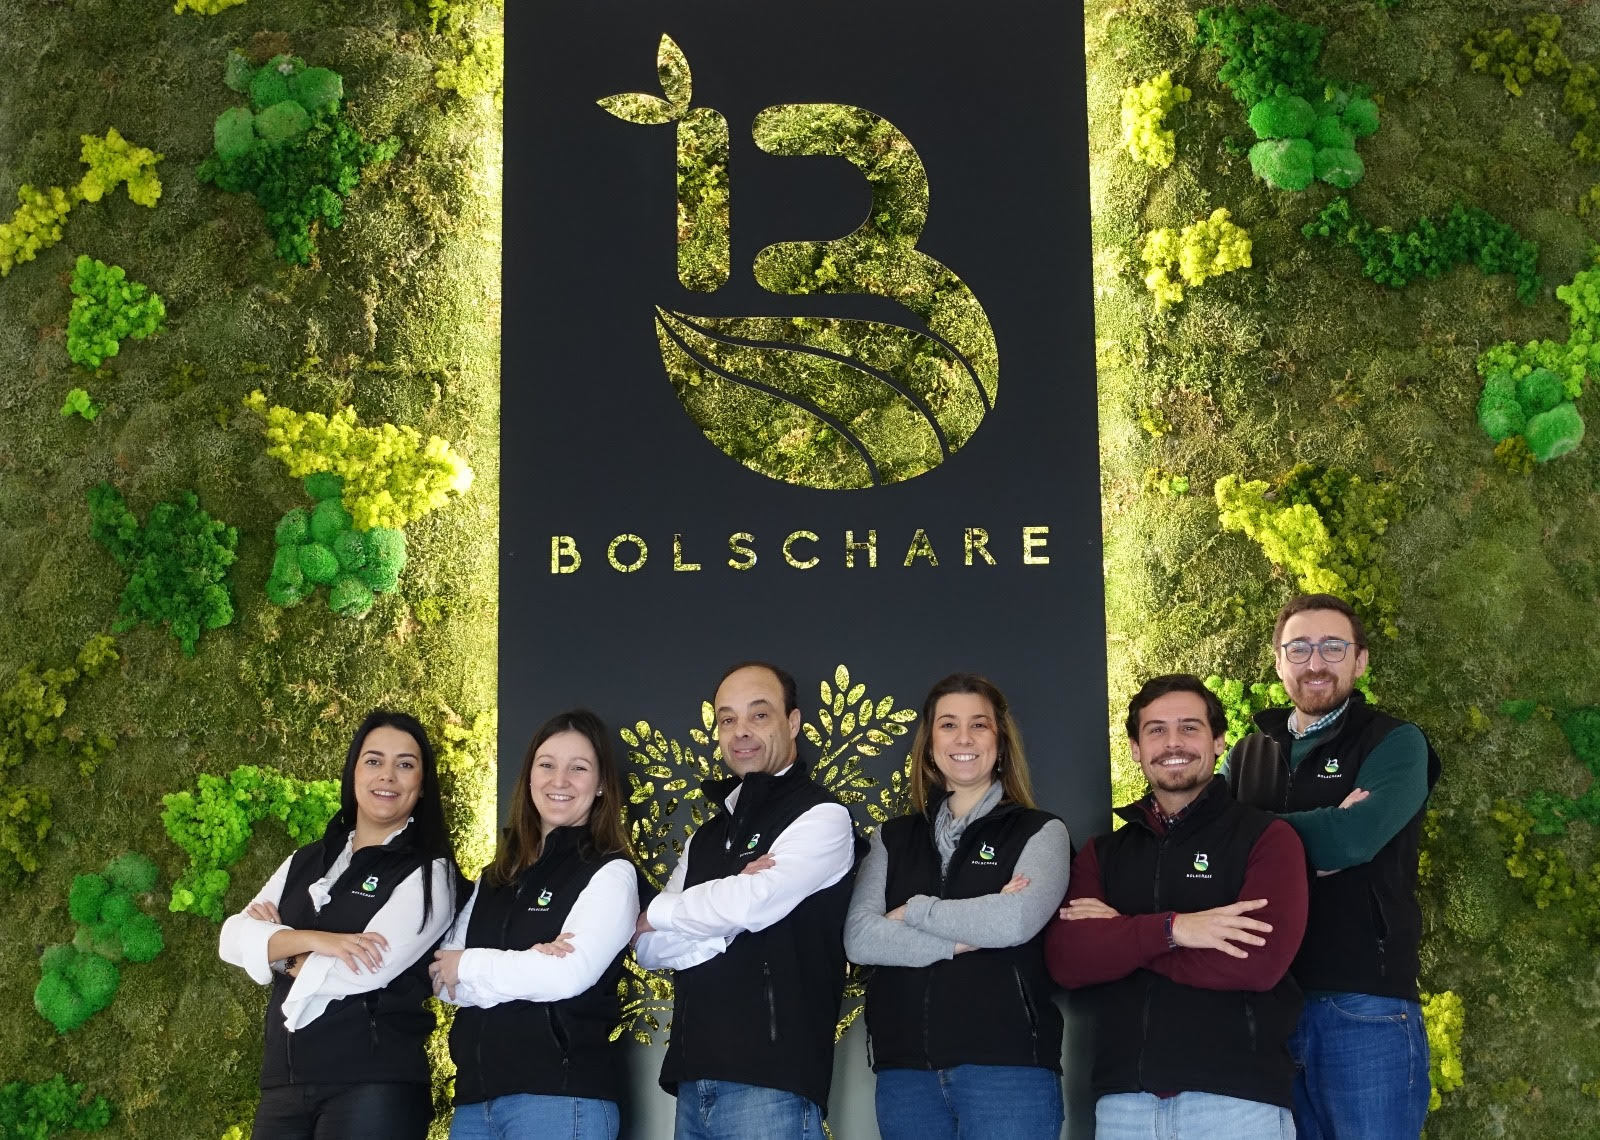 El grupo extremeño Bolschare se hace con toda la división agrícola de Borges e integrará a su plantilla